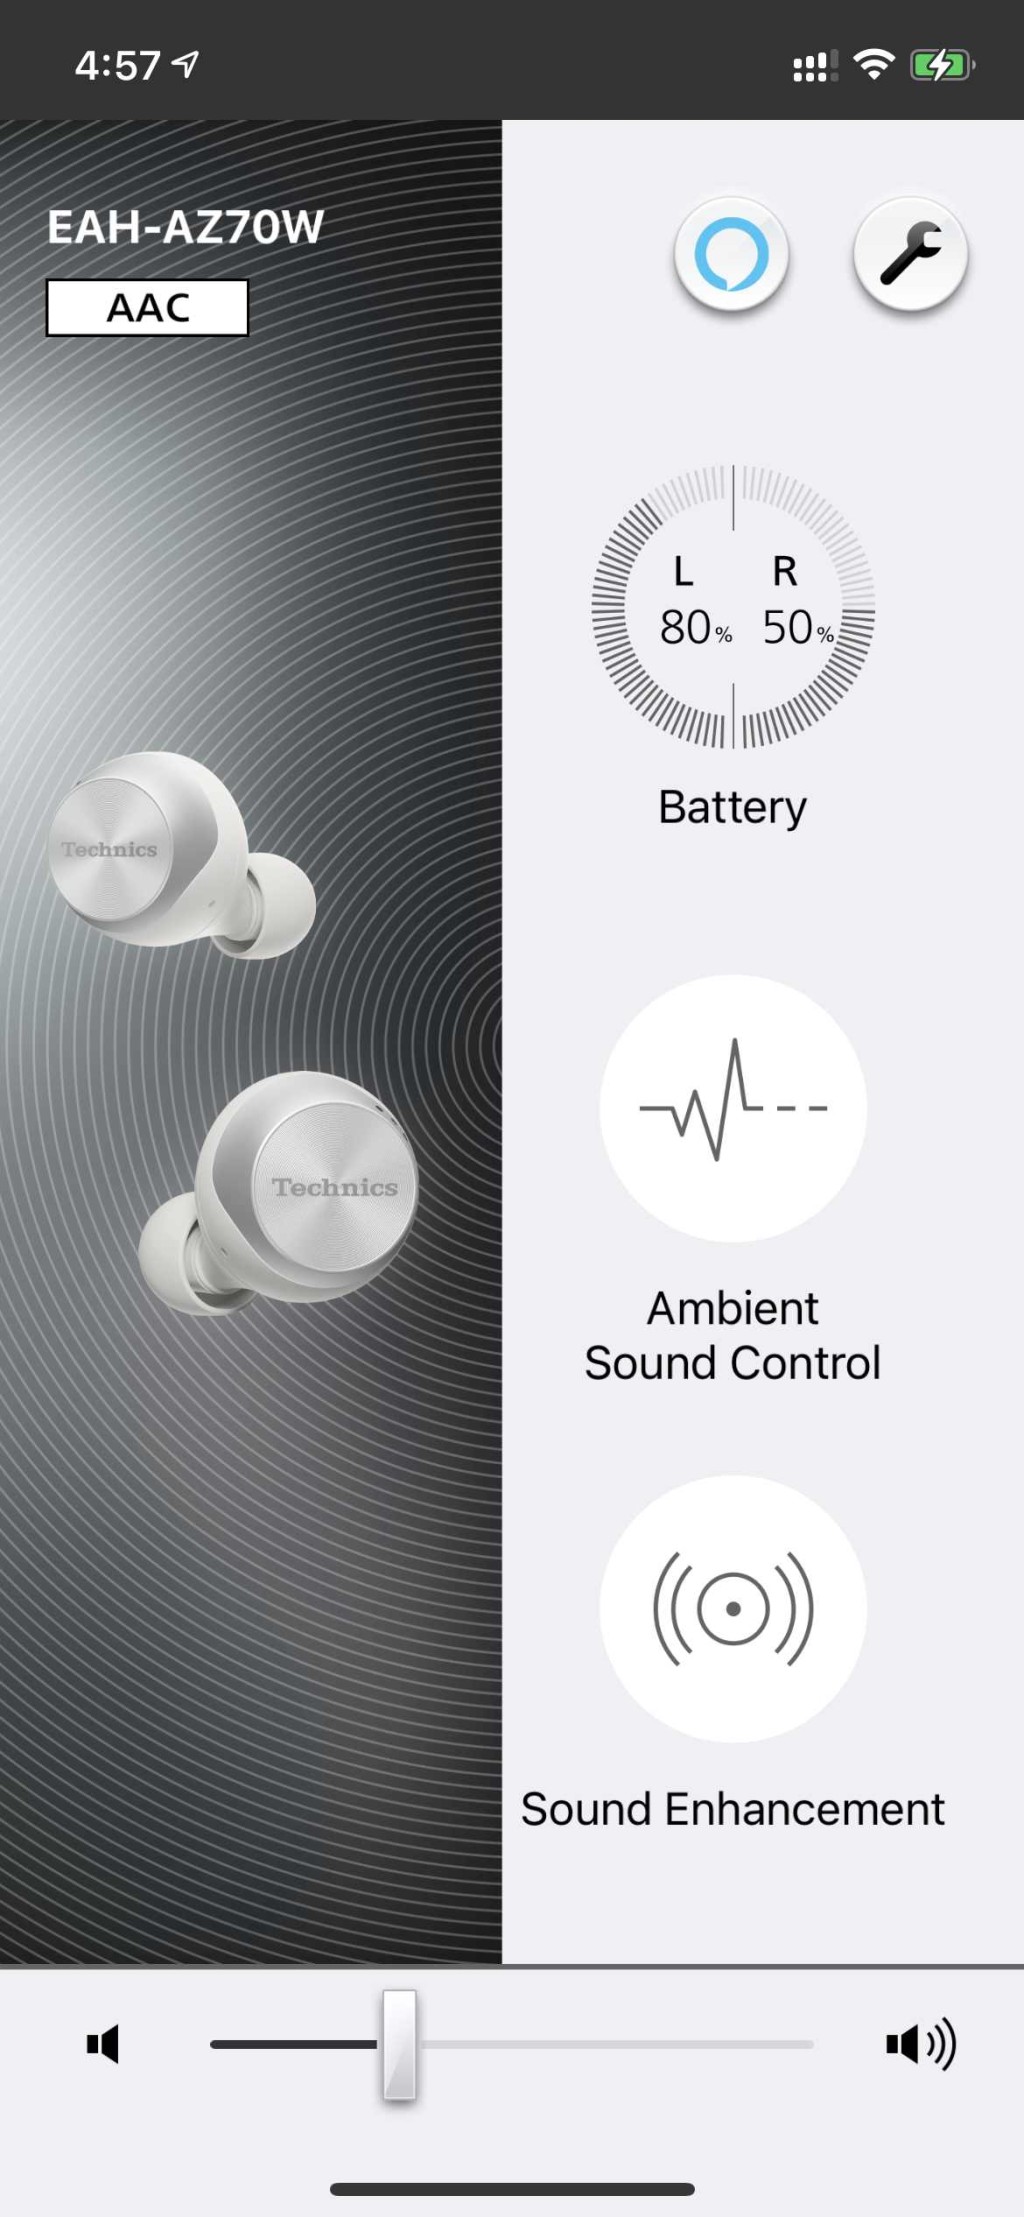 ●乐迷可经《Technics Audio Connect》App切换声音模式，并选择降噪及环境声水平。